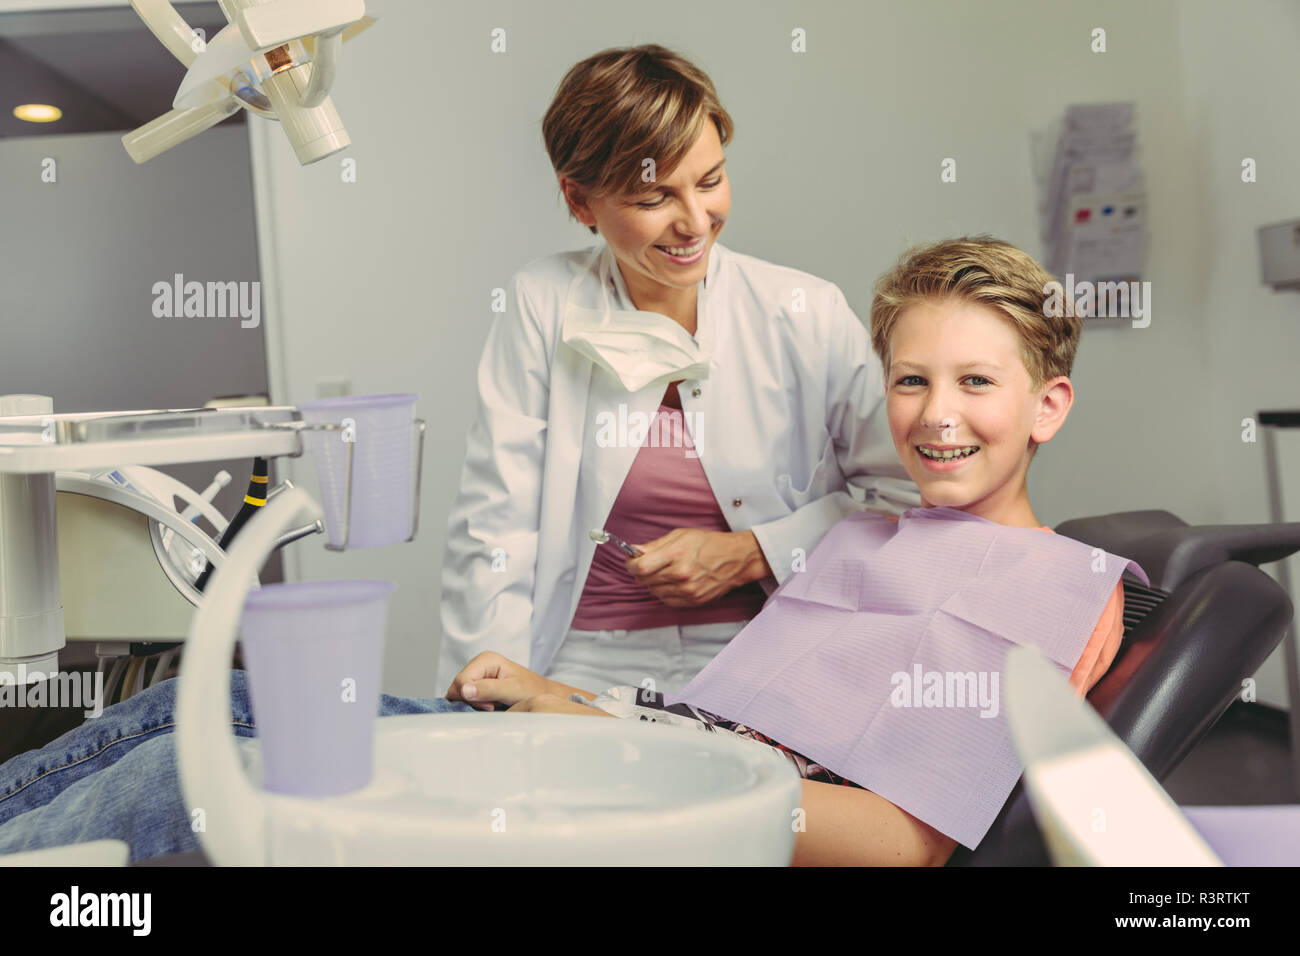 Junge glücklich lächelnd nach der Behandlung beim Zahnarzt Stockfoto